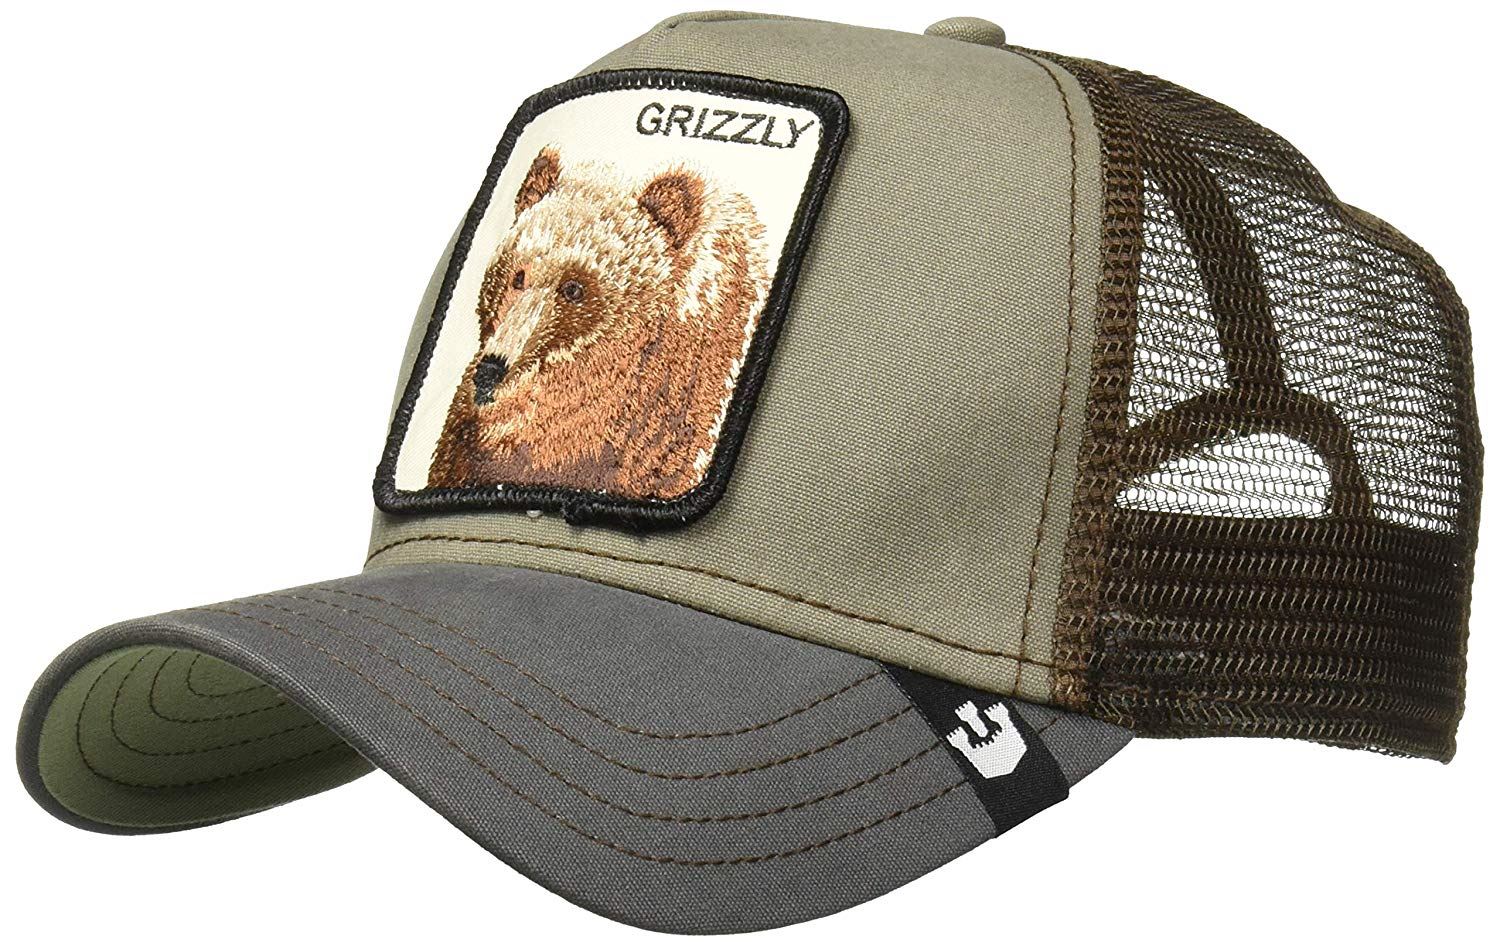 כובעי גורין לילדים דב גריזלי Goorin Bros Grizzly